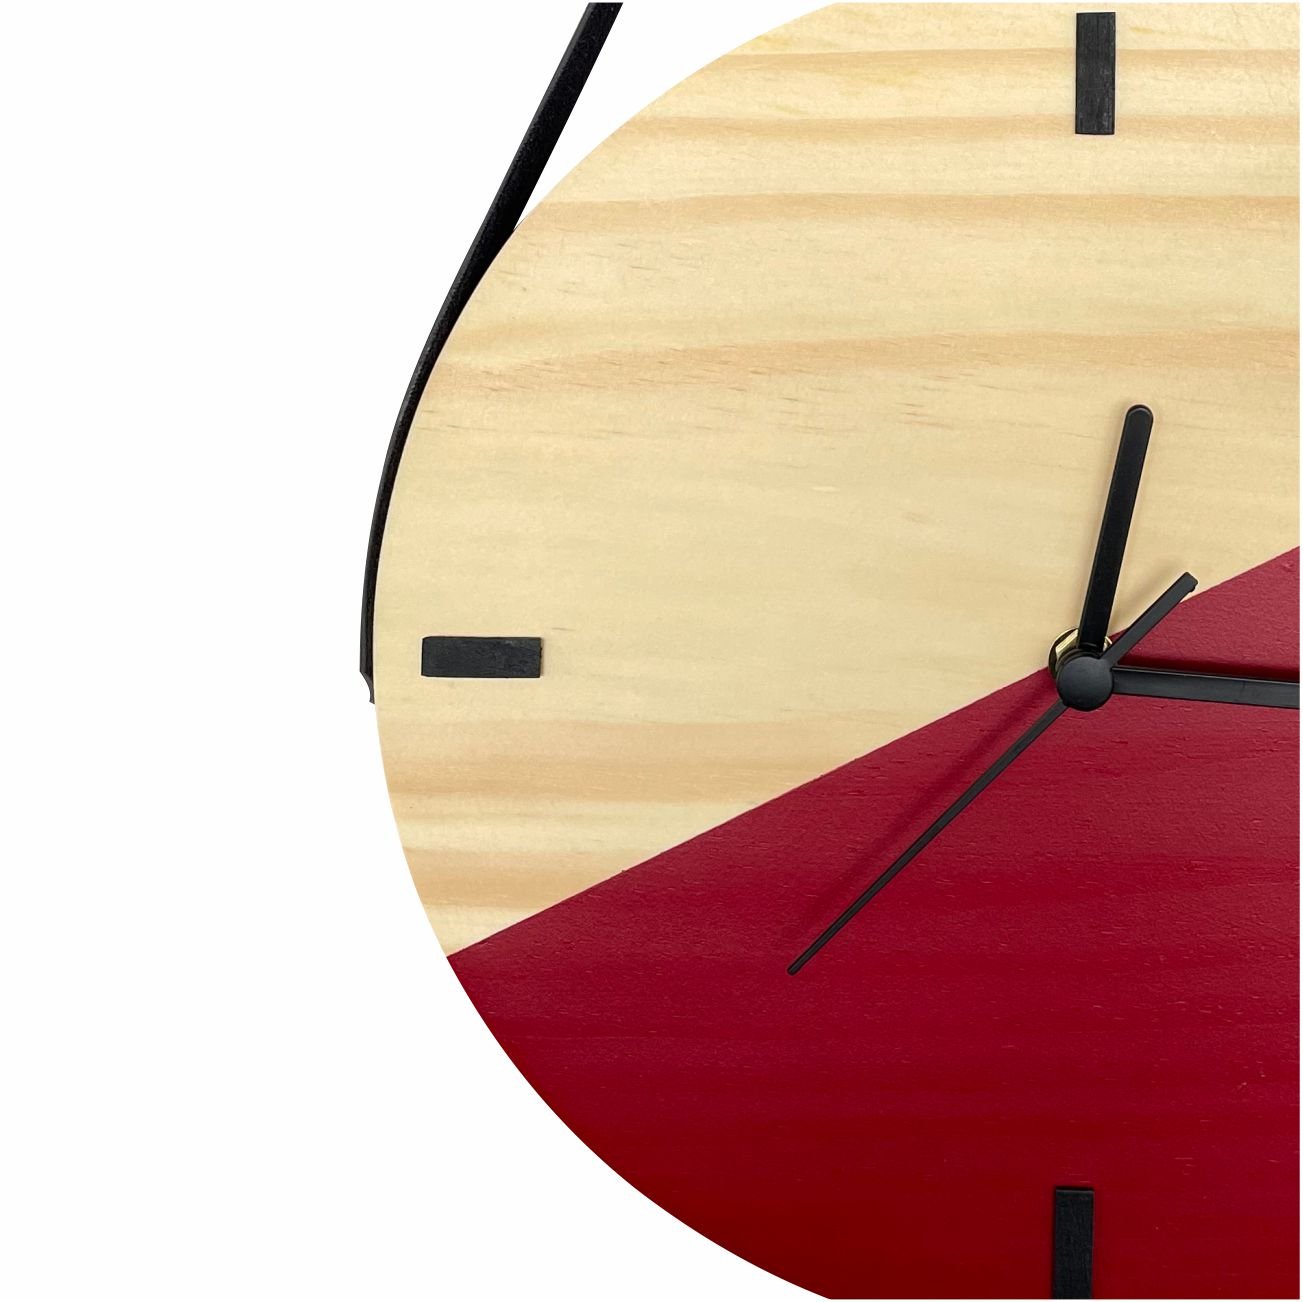 Relógio Decorativo Edward Clock Escandinavo Vermelho Ferrari - 2